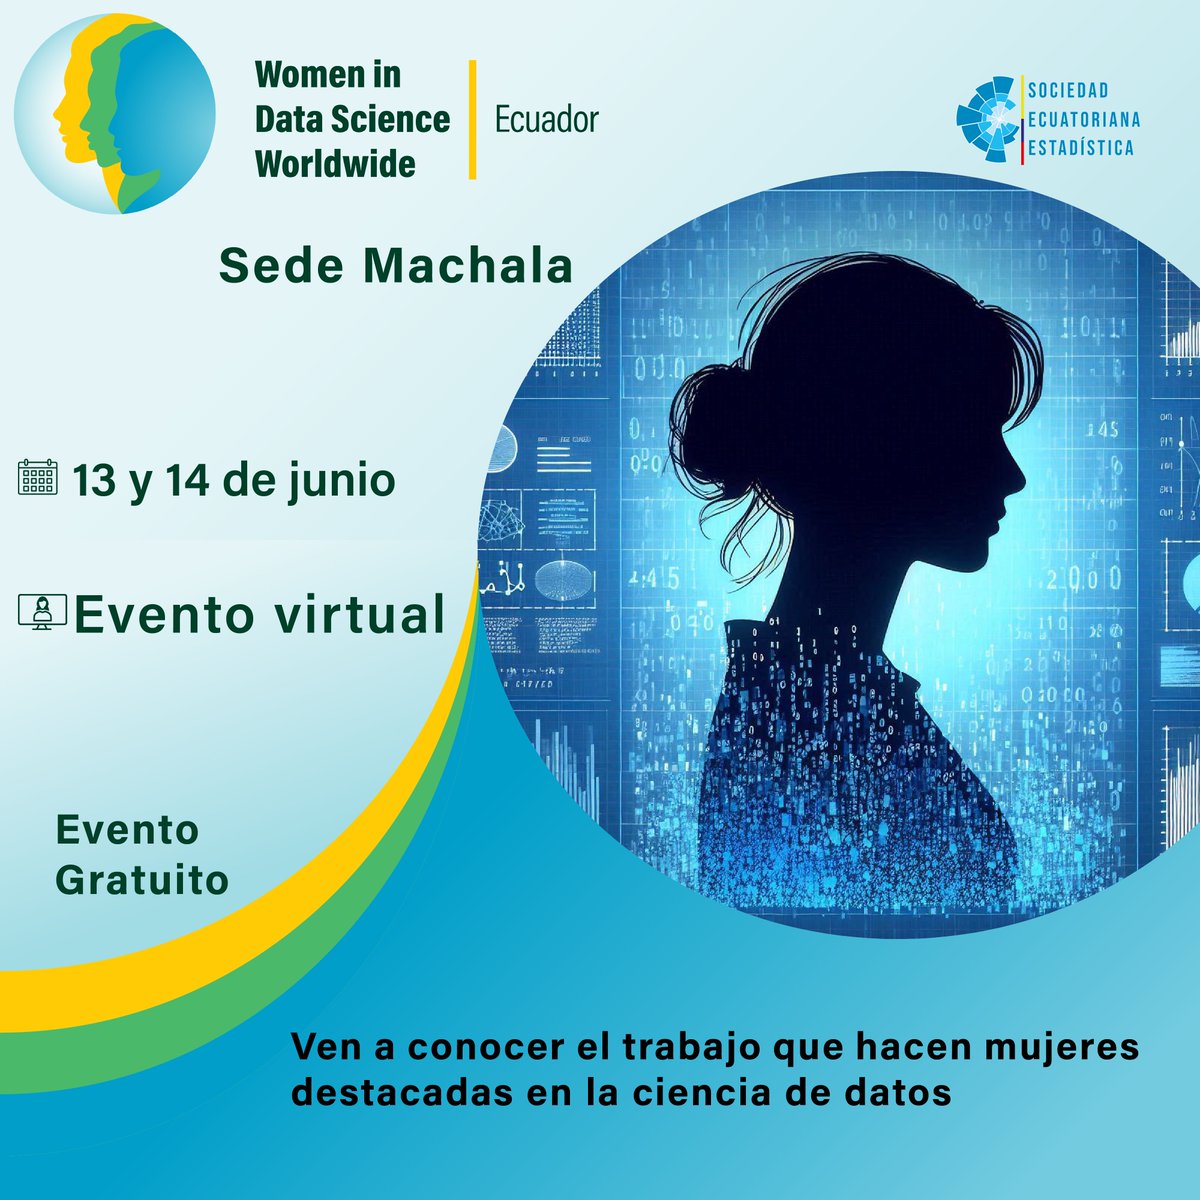 ¡WiDS Machala está aquí!
Únete a este evento global organizado por la Sociedad Ecuatoriana de Estadística. Aprende de mujeres excepcionales en ciencia de datos a través de charlas y talleres.
¡No faltes!

share.hsforms.com/17uATolF9S_yTd…

#WiDSMachala #CienciaDeDatos #WomenInDataScience